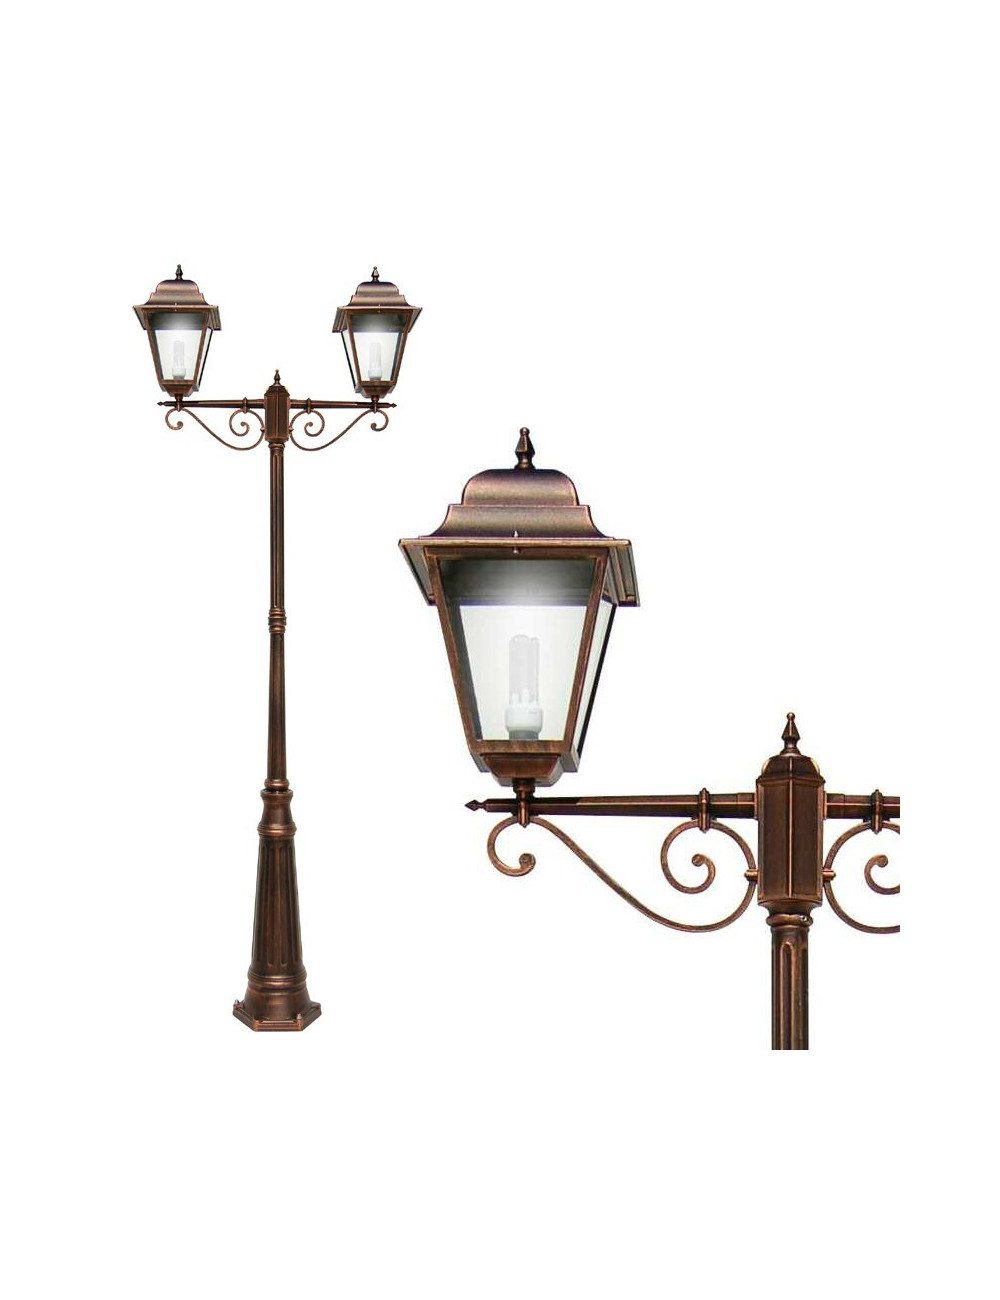 ATHENA GRANDE Square Pole Street Lampe klassische Außenbeleuchtung